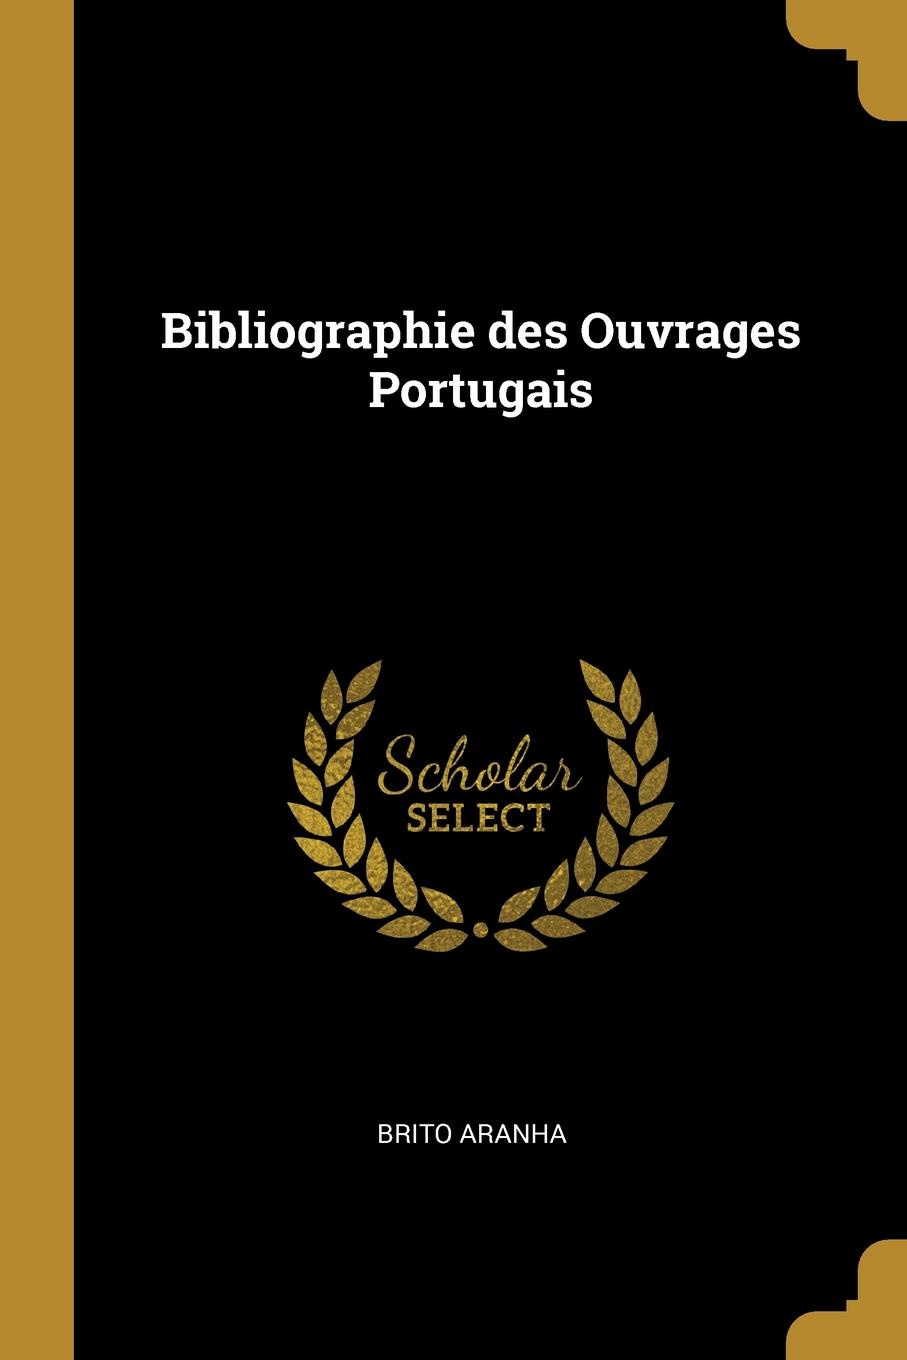 Bibliographie des Ouvrages Portugais